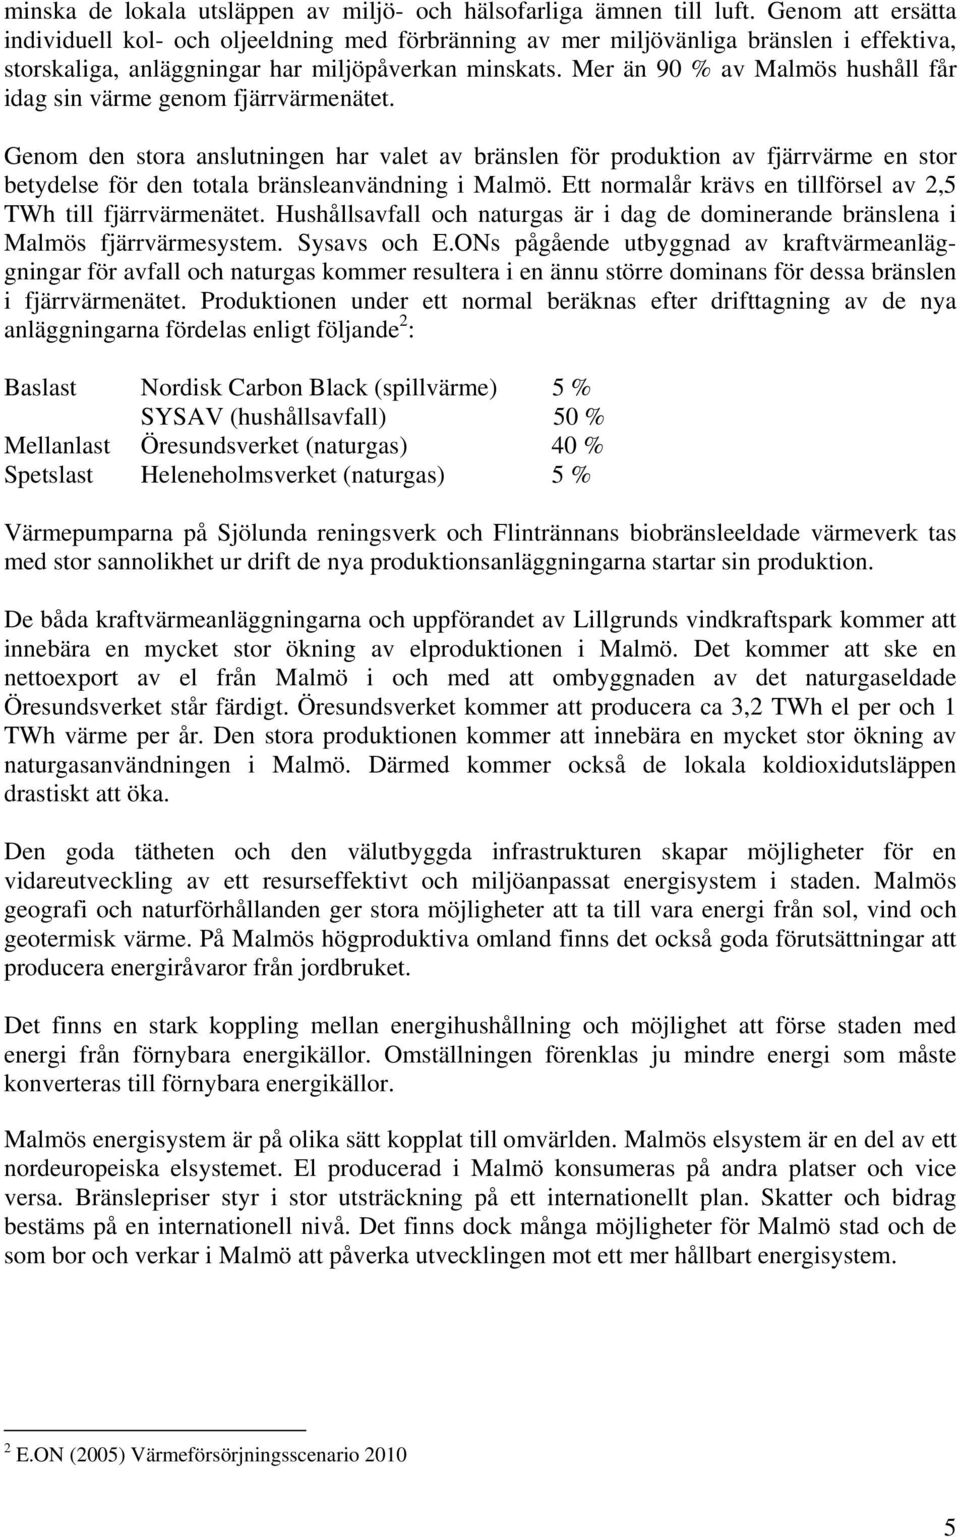 Mer än 90 % av Malmös hushåll får idag sin värme genom fjärrvärmenätet.